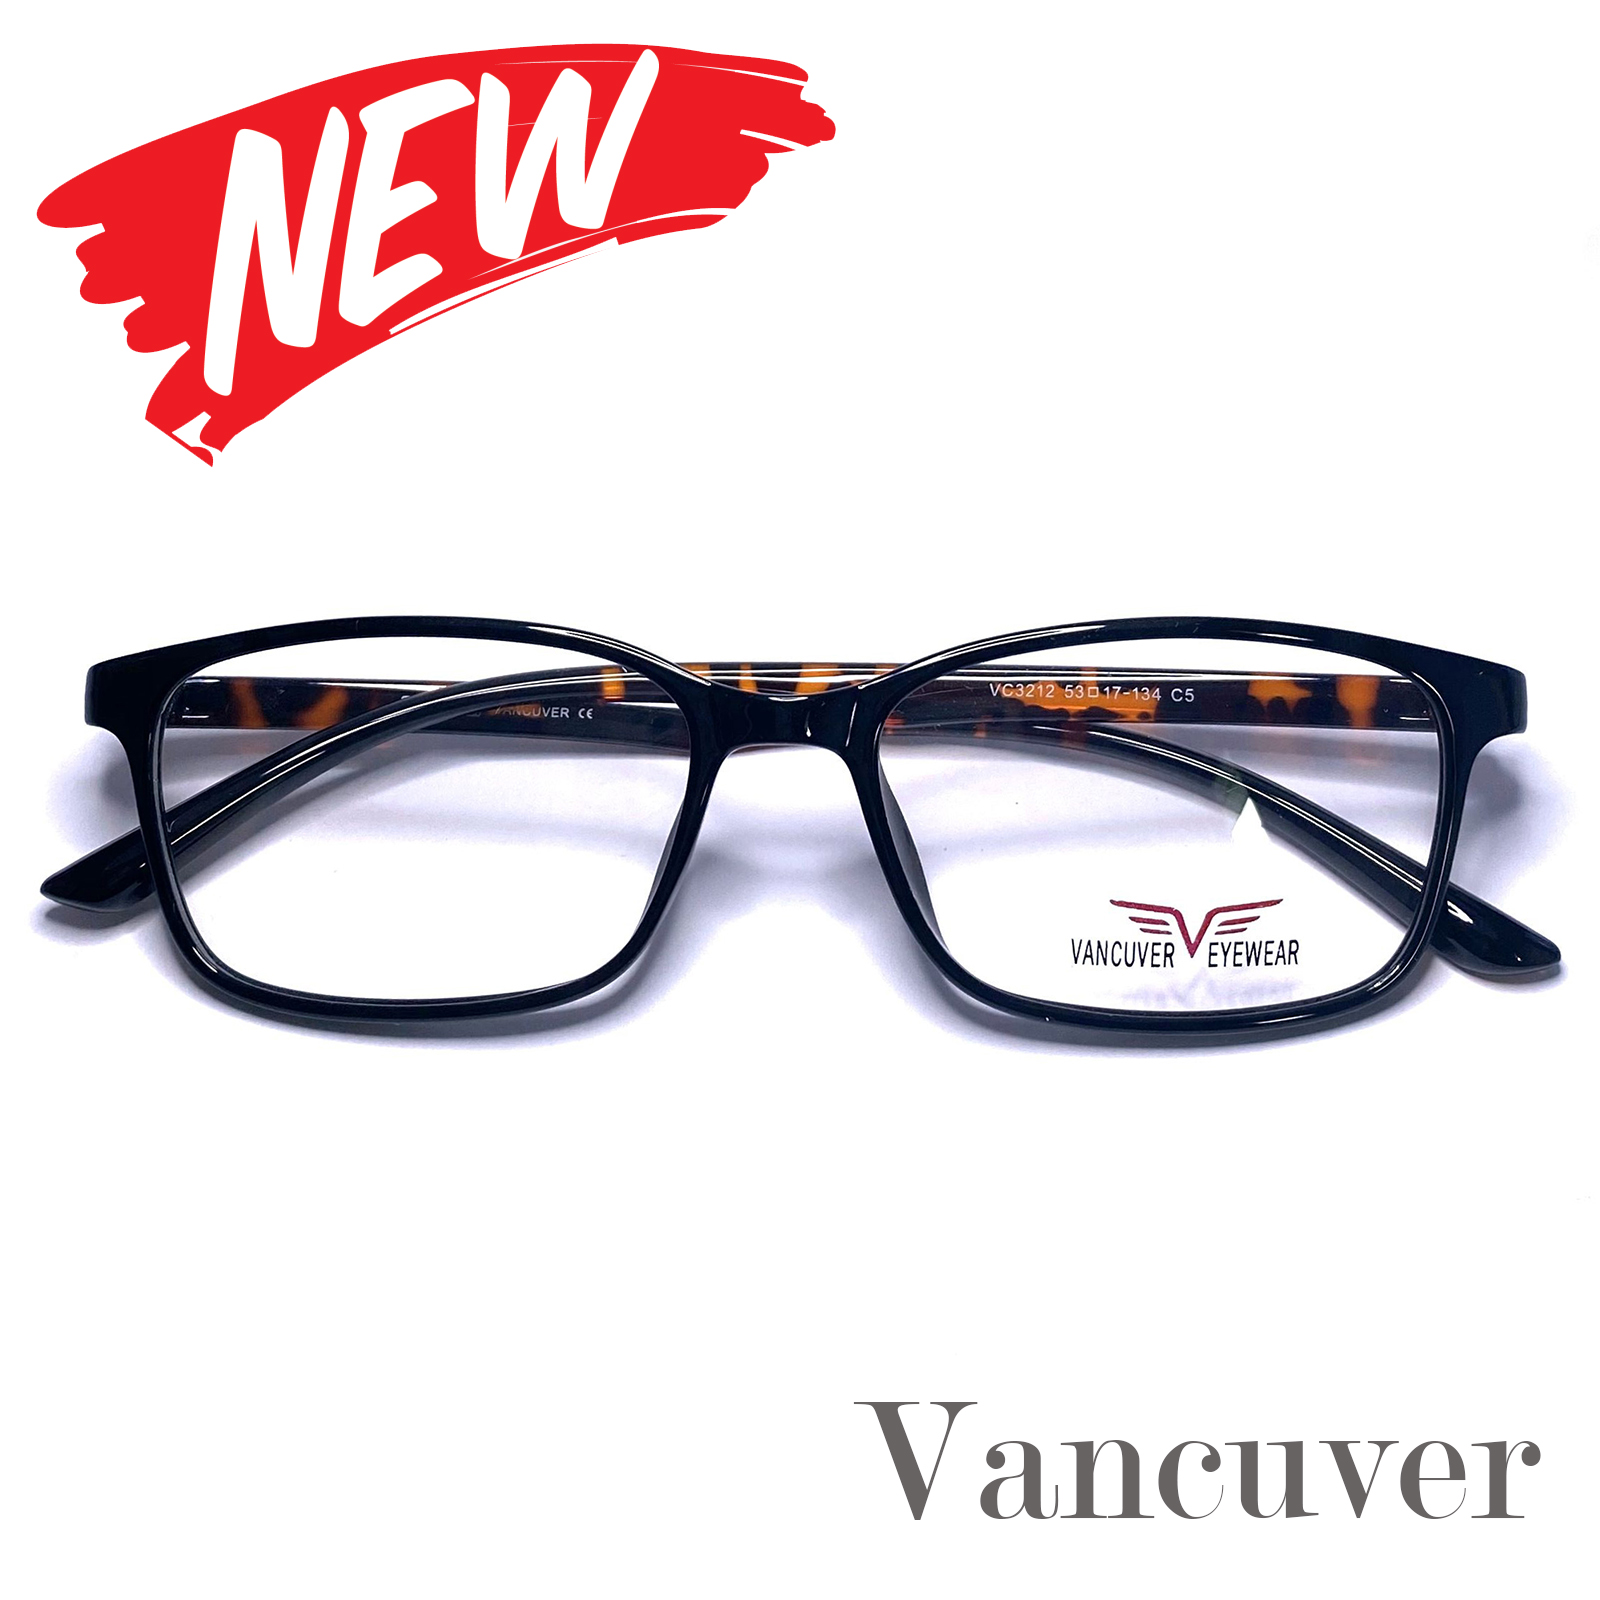 กรอบแว่นตา สำหรับตัดเลนส์ แว่นสายตา แว่นตา รุ่น Vancuver 3212 C-5 สีน้ำตาล ทรงเหลี่ยม ขาข้อต่อ วัสดุพลาสติกพีซีเกรดเอ เบา เหนียว ไม่แตกหัก